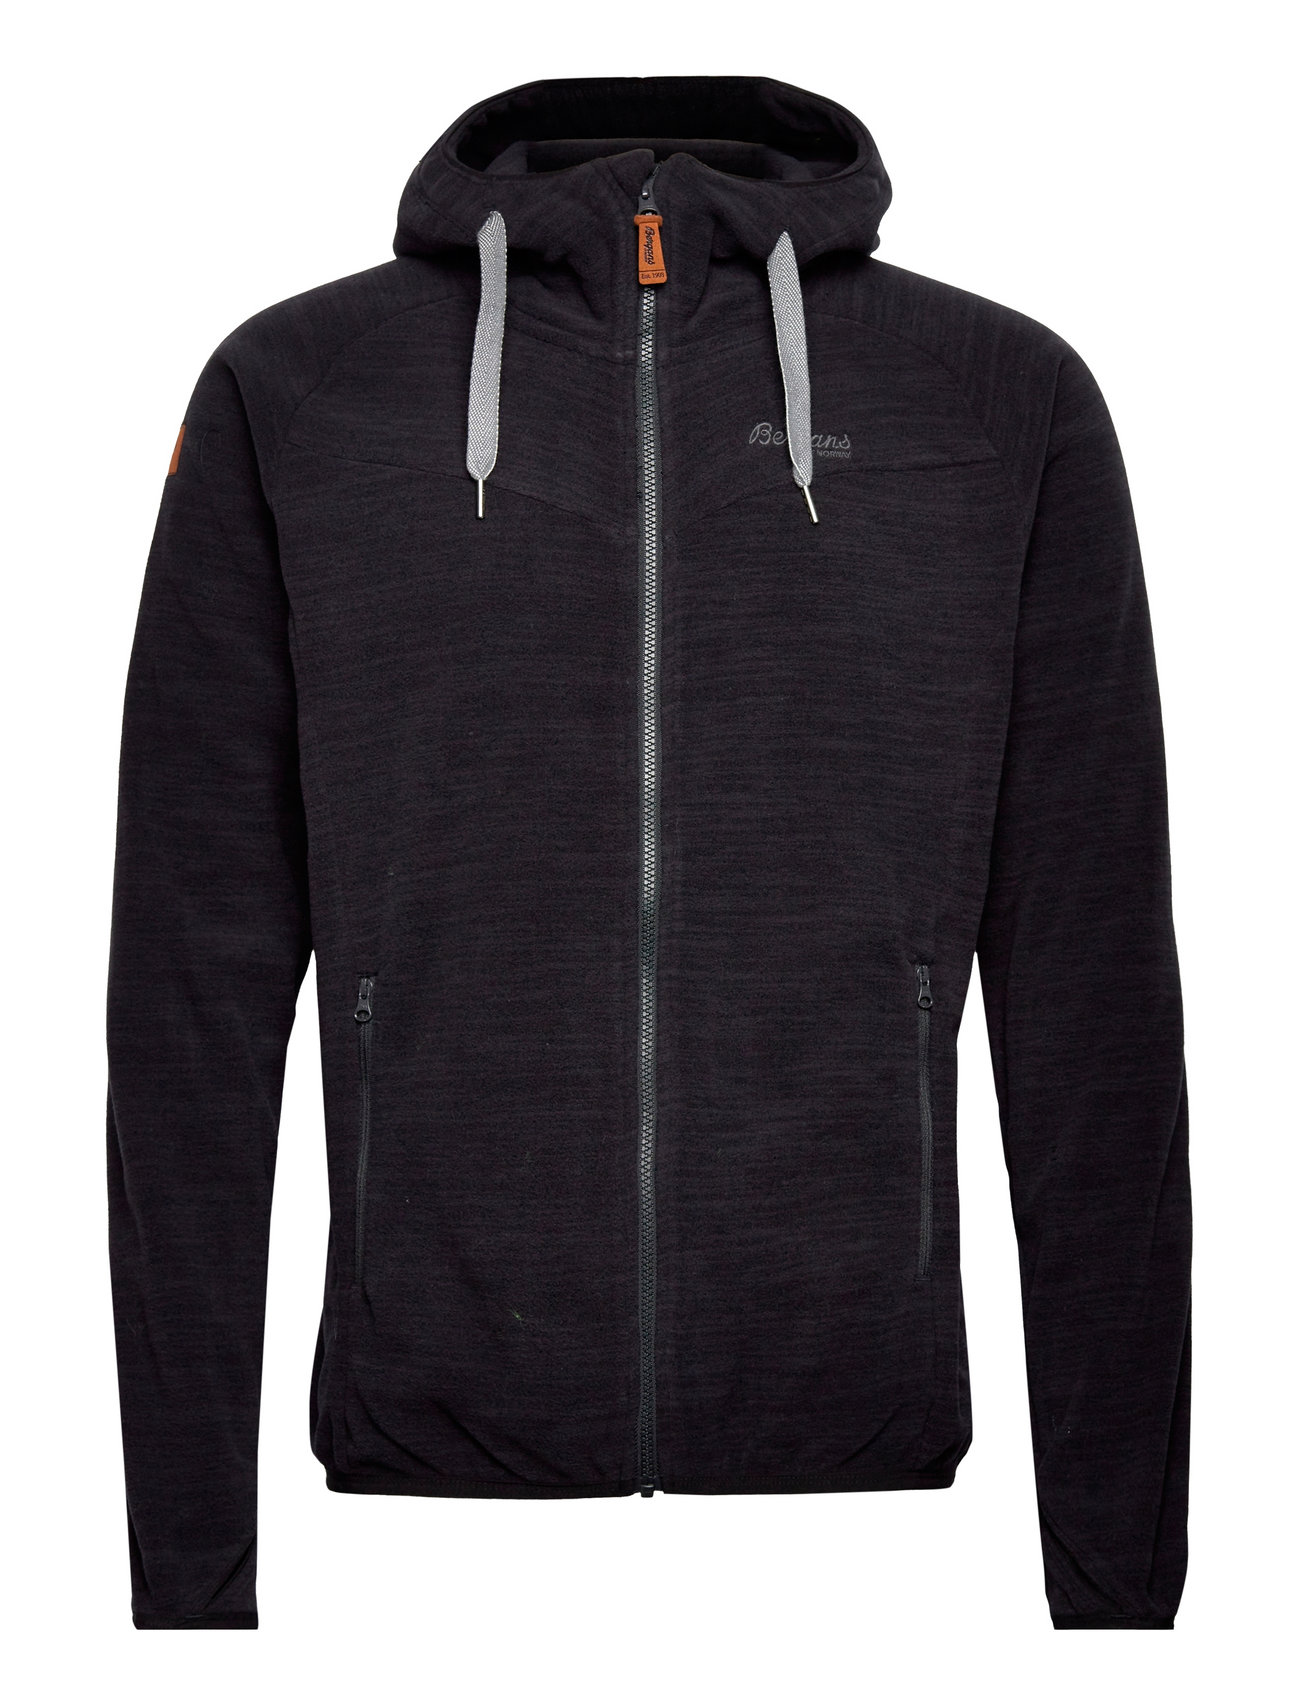 Hareid Fleece Jacket Sport Sweat-shirts & Hoodies Fleeces & Midlayers Black Bergans